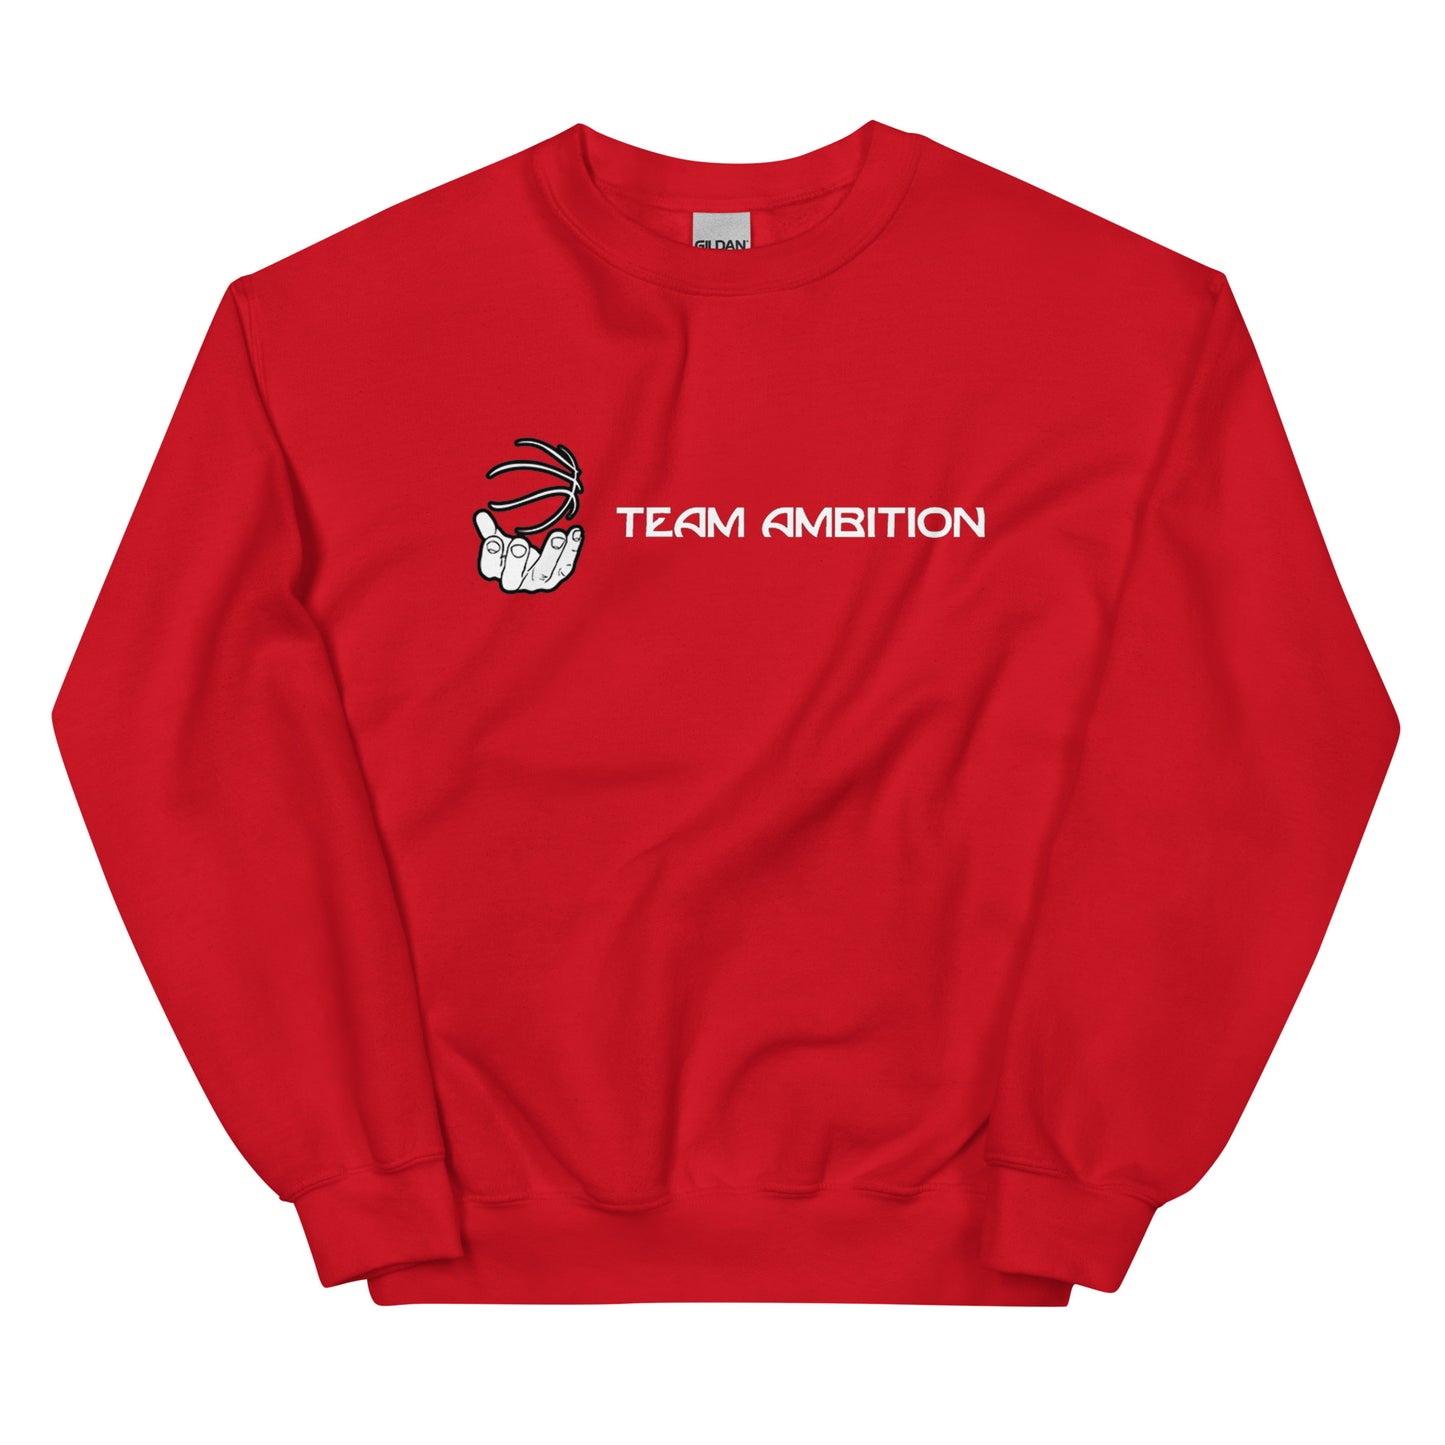 Ambition Sweatshirt